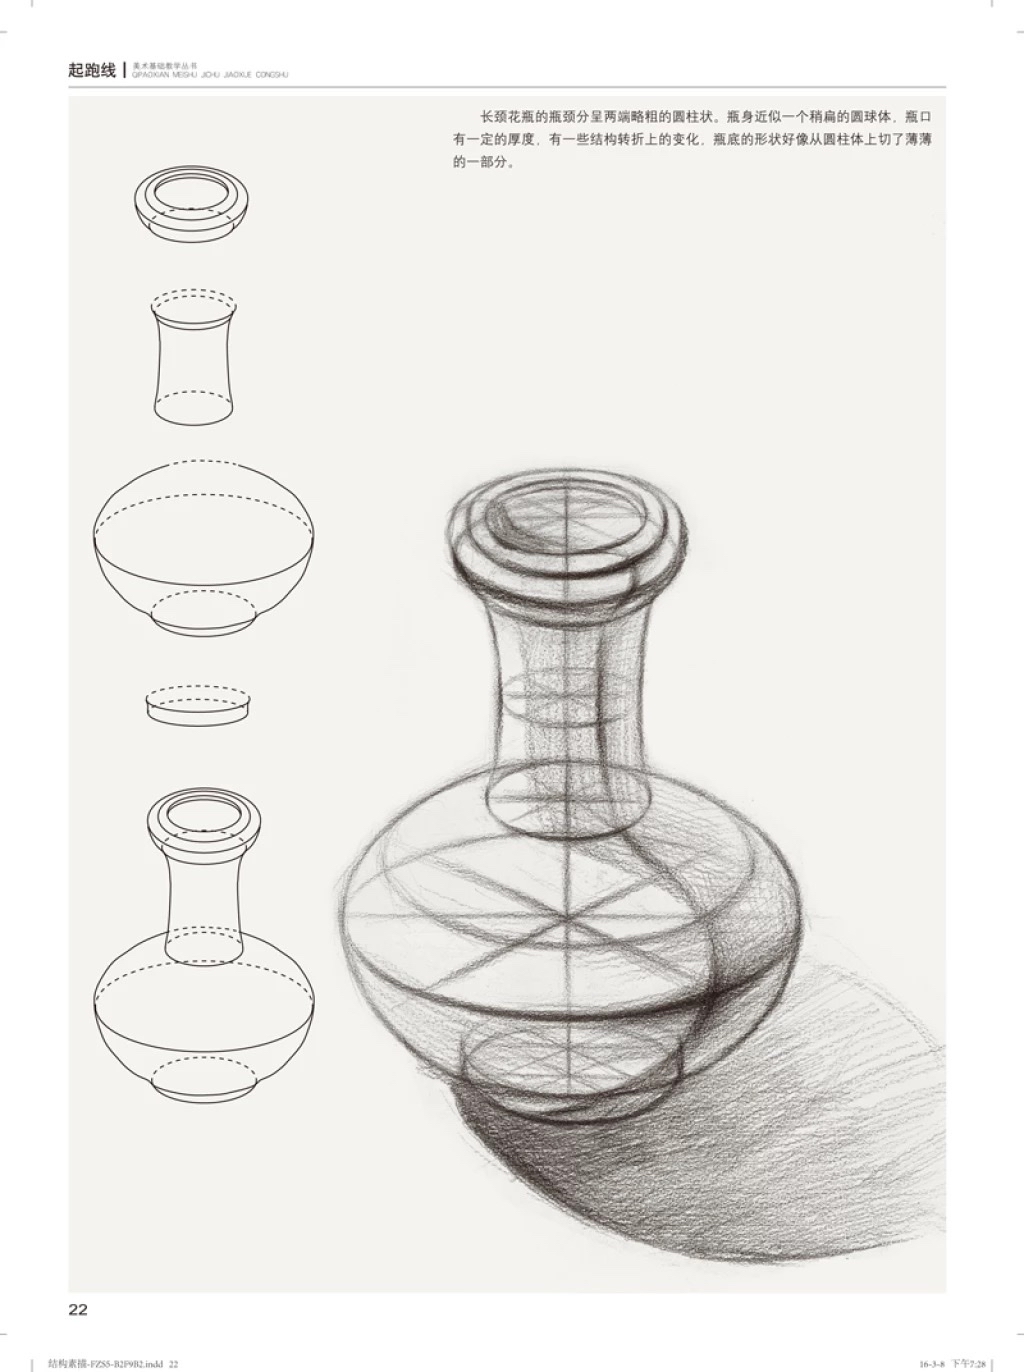 方雨慧:罐子结构素描